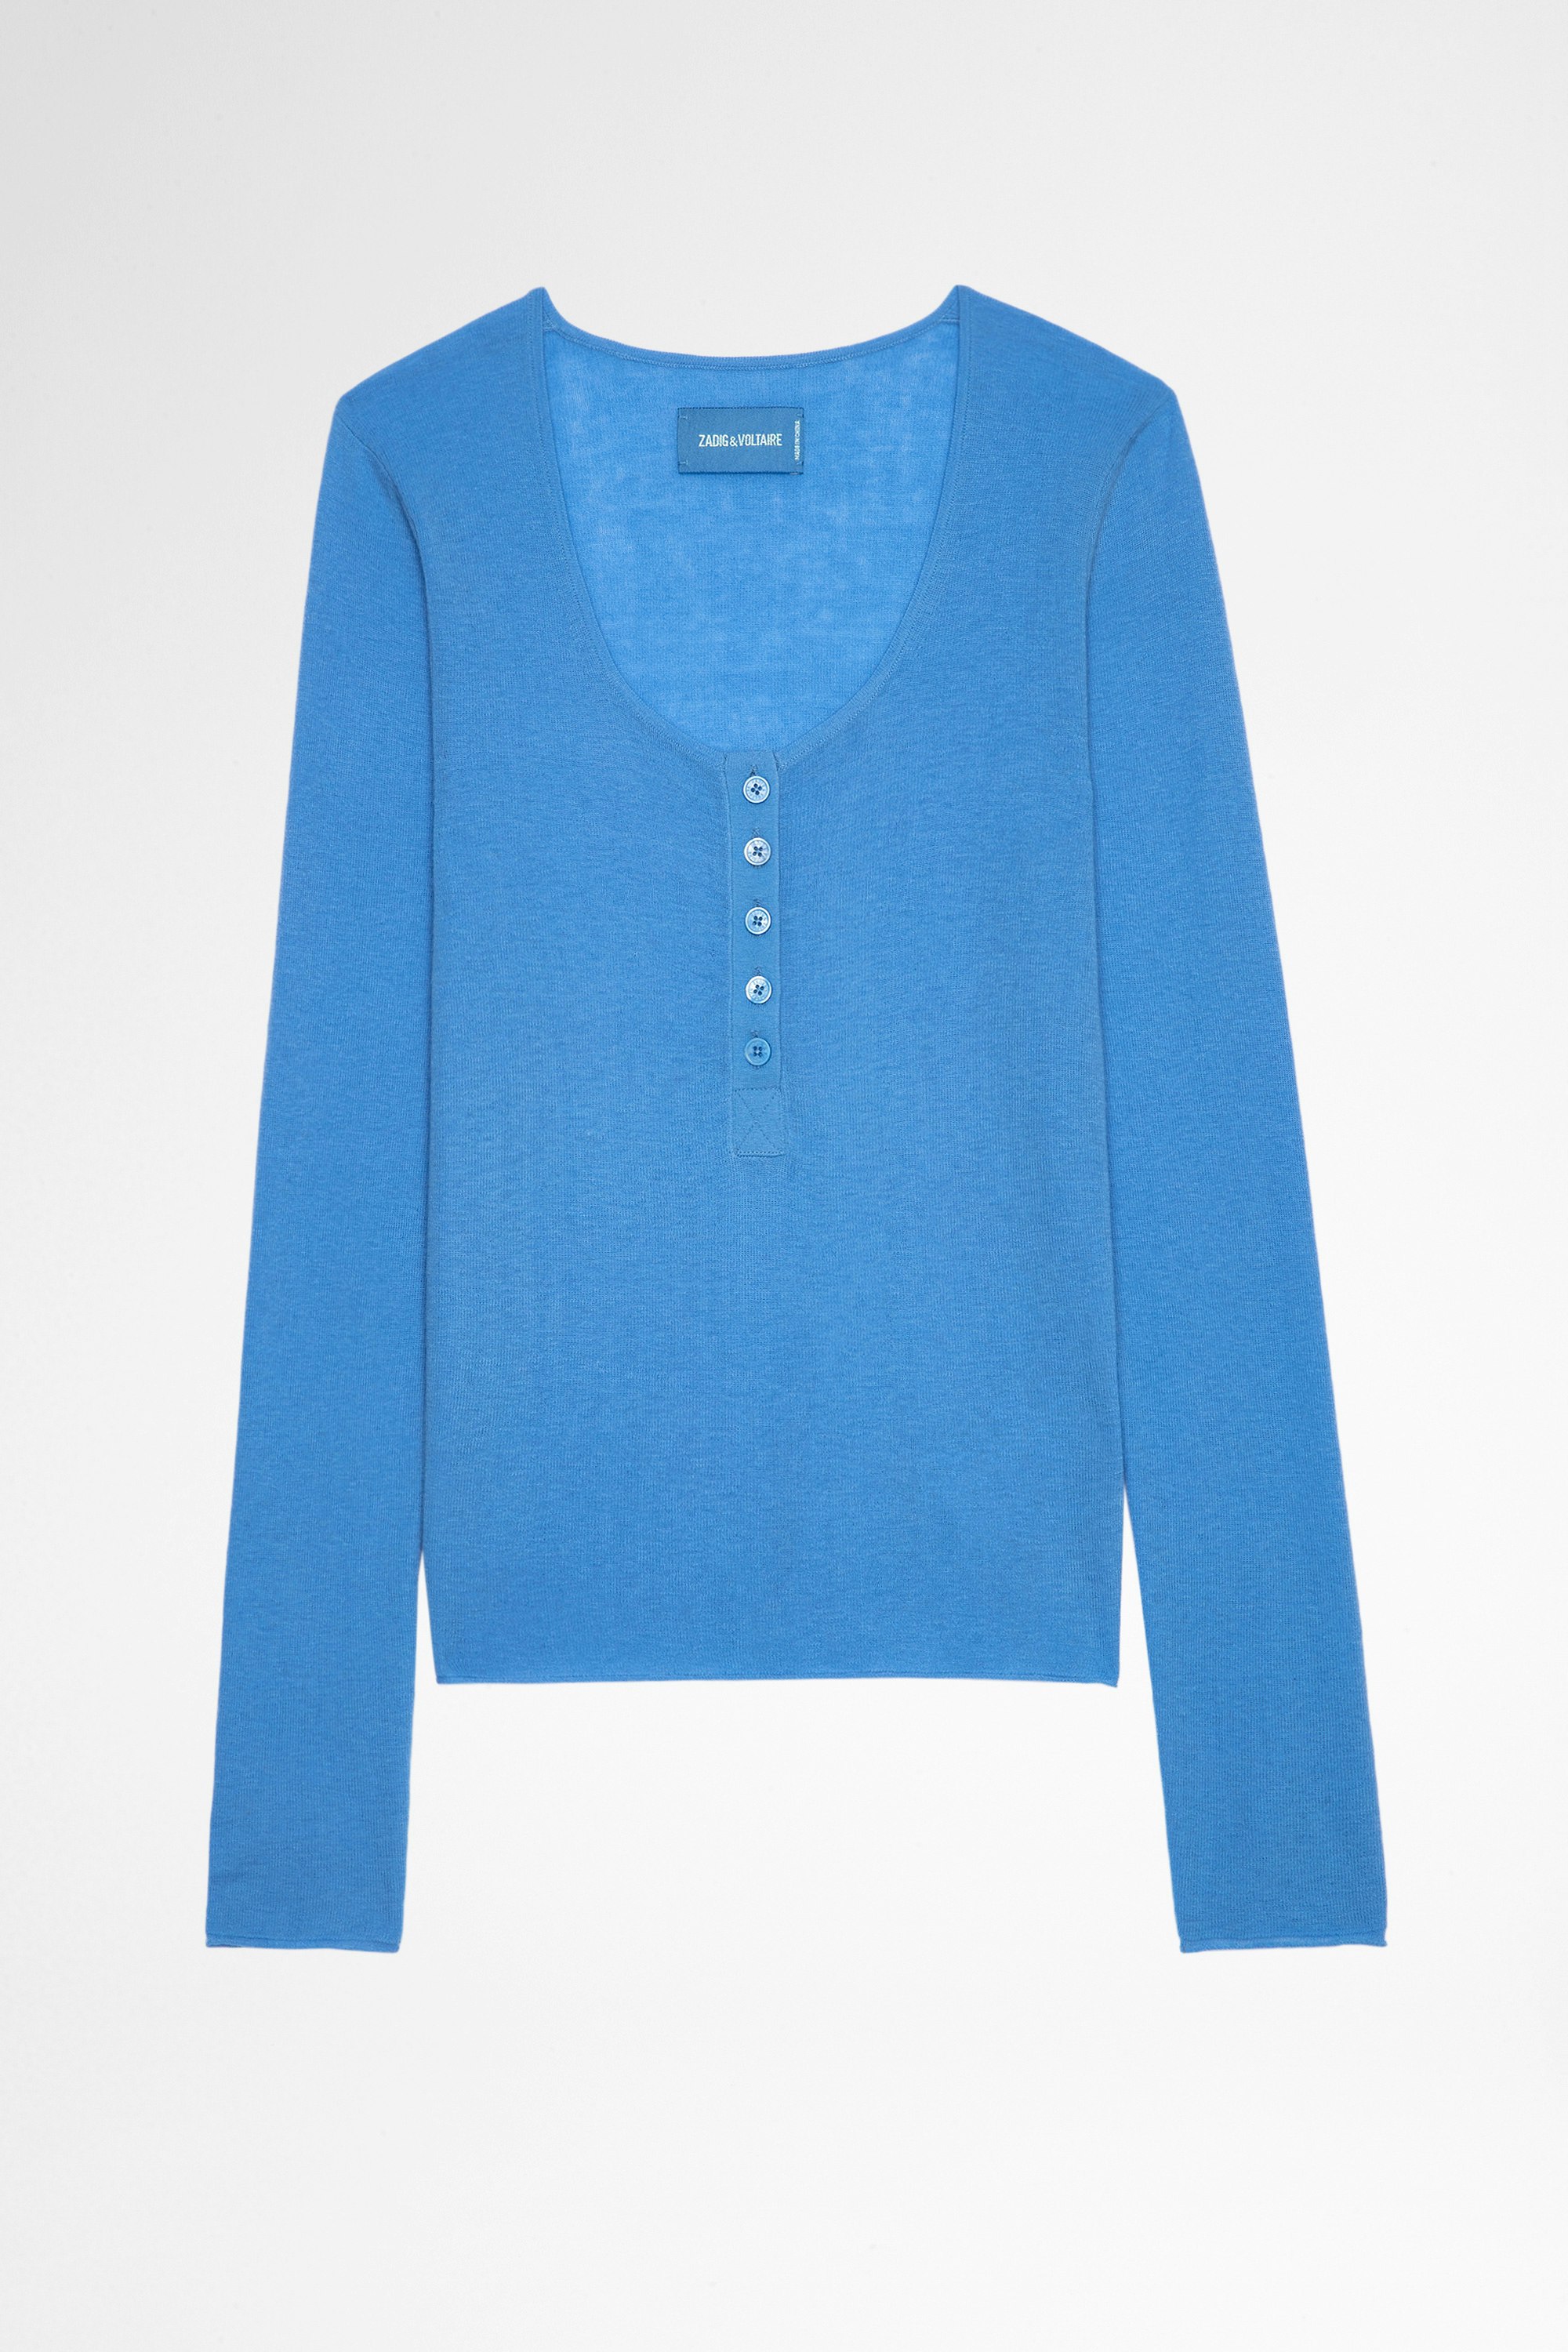 Jersey Mila Jersey azul de punto fino con mangas largas y cuello con botones para mujer